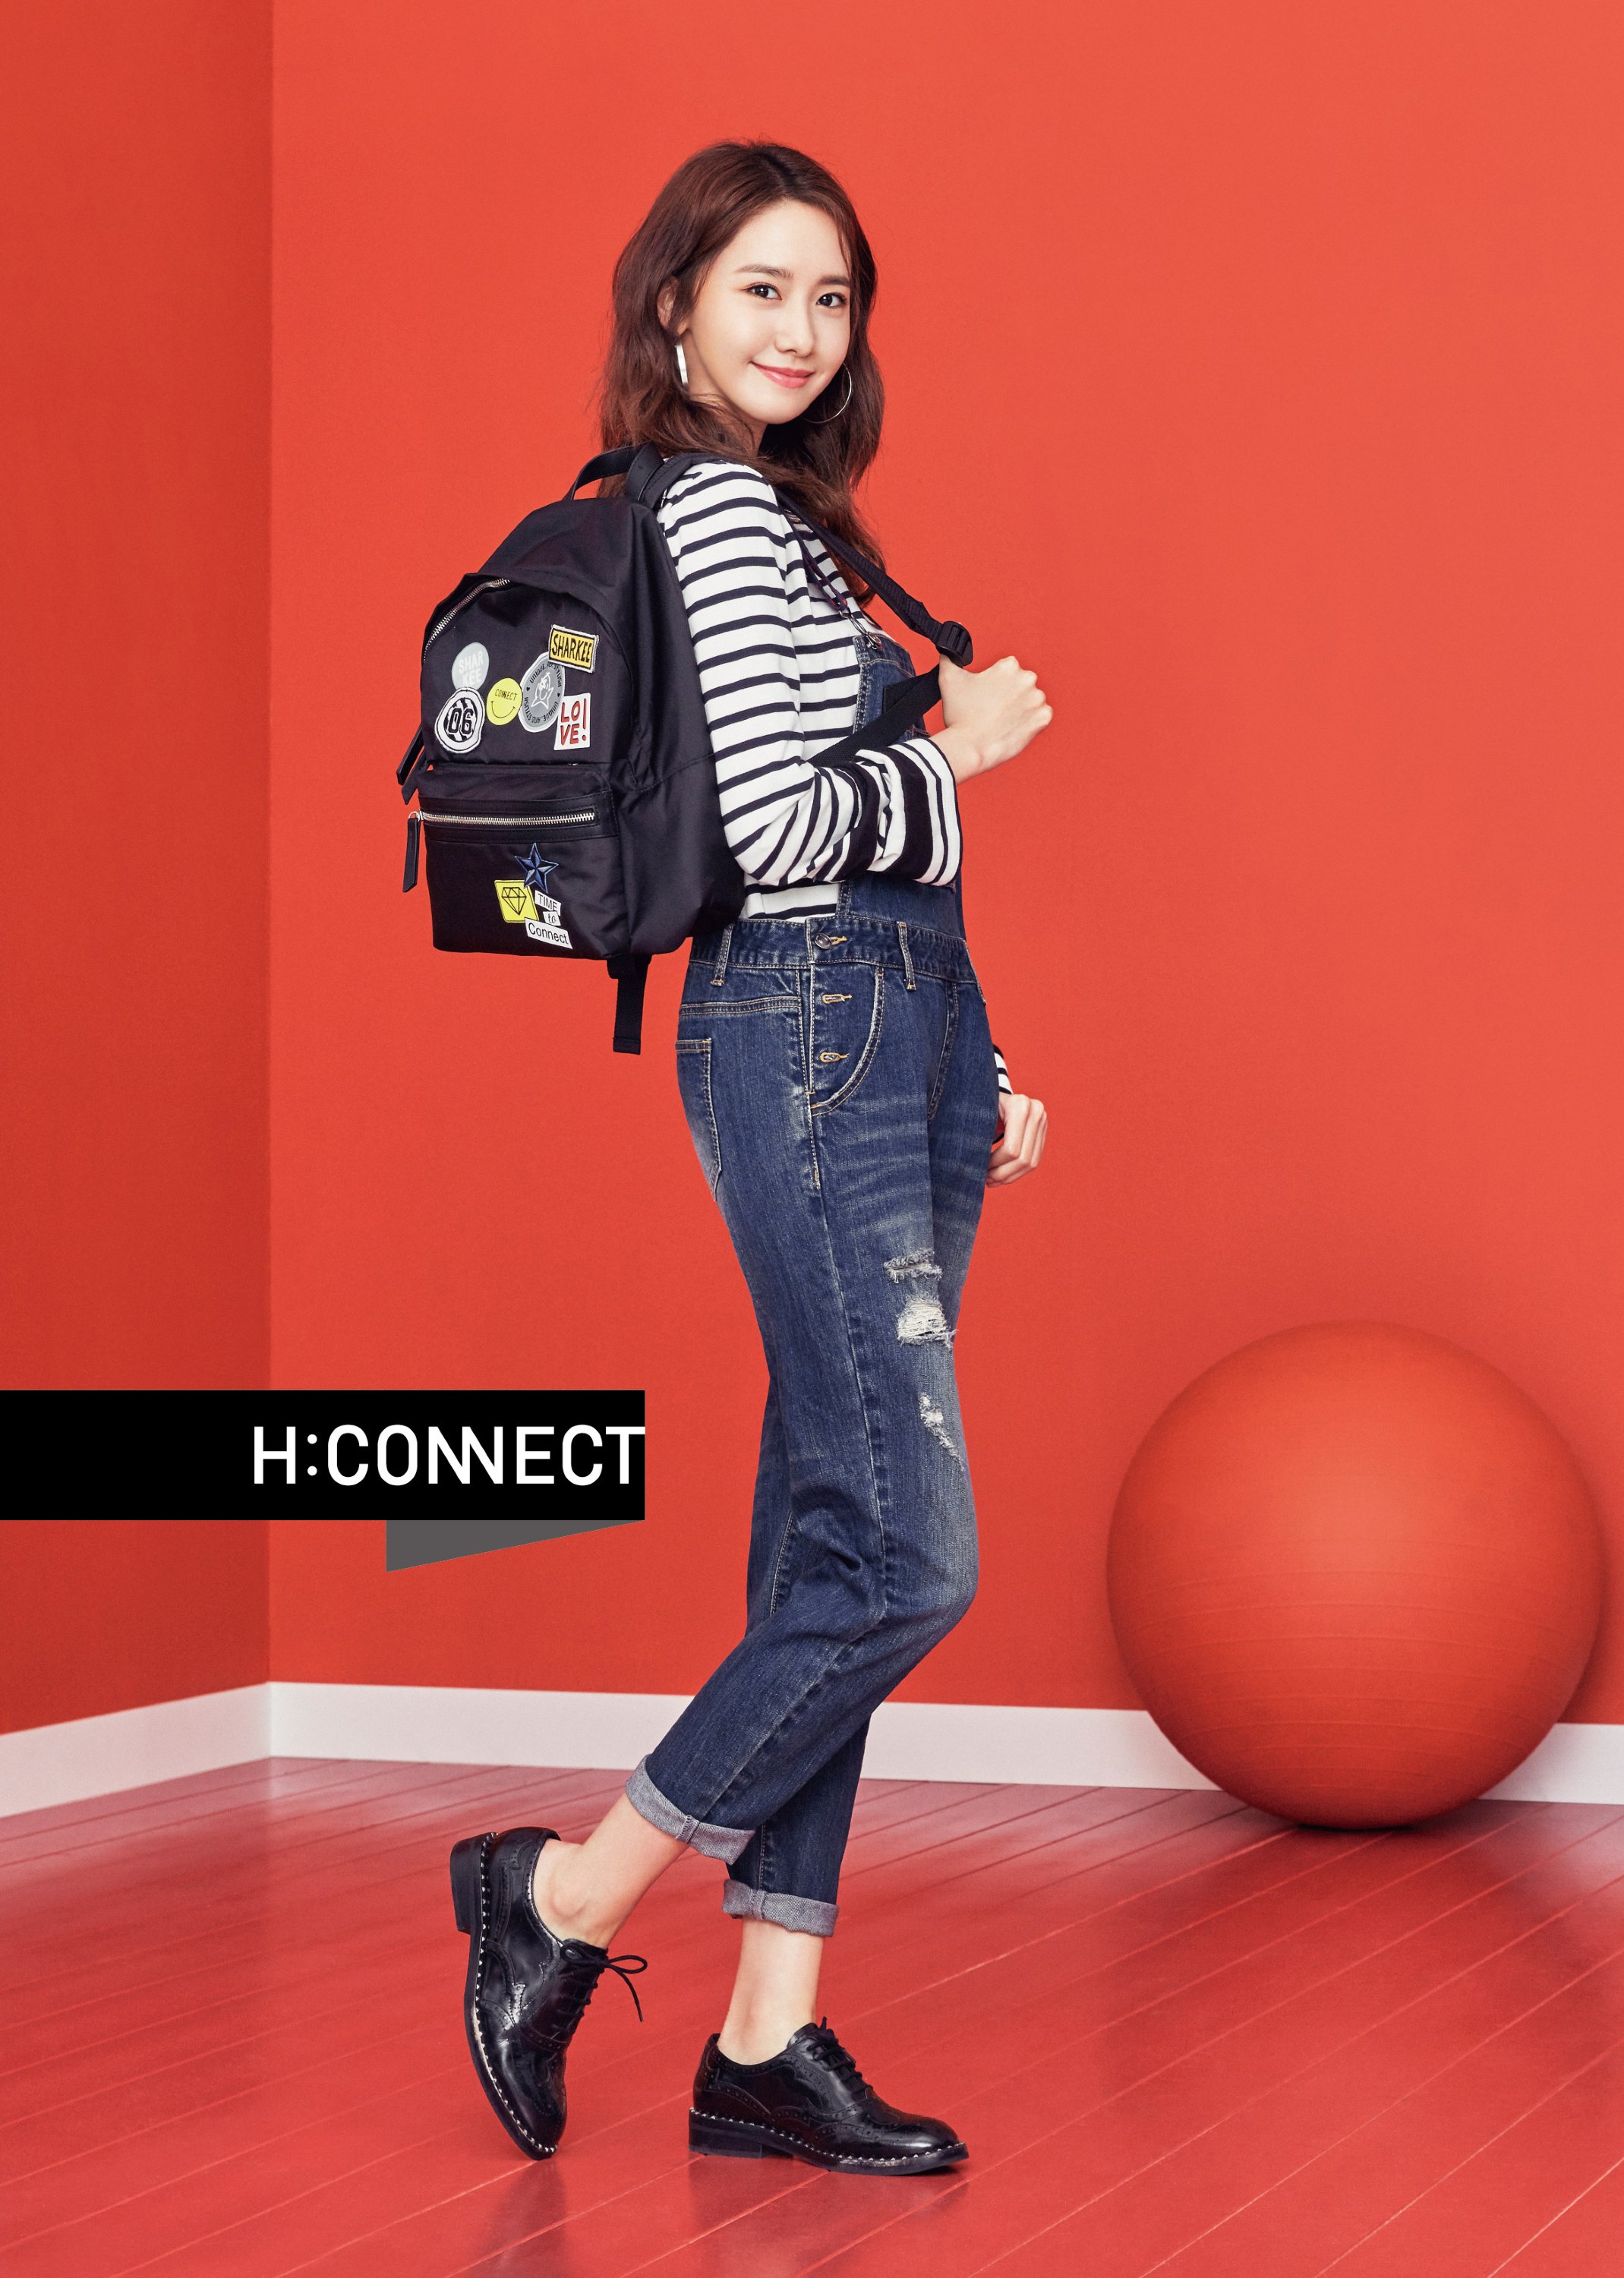 [OTHER][27-07-2015]YoonA trở thành người mẫu mới cho dòng thời trang "H:CONNECT" - Page 7 H1C4PQWEFm-3000x3000